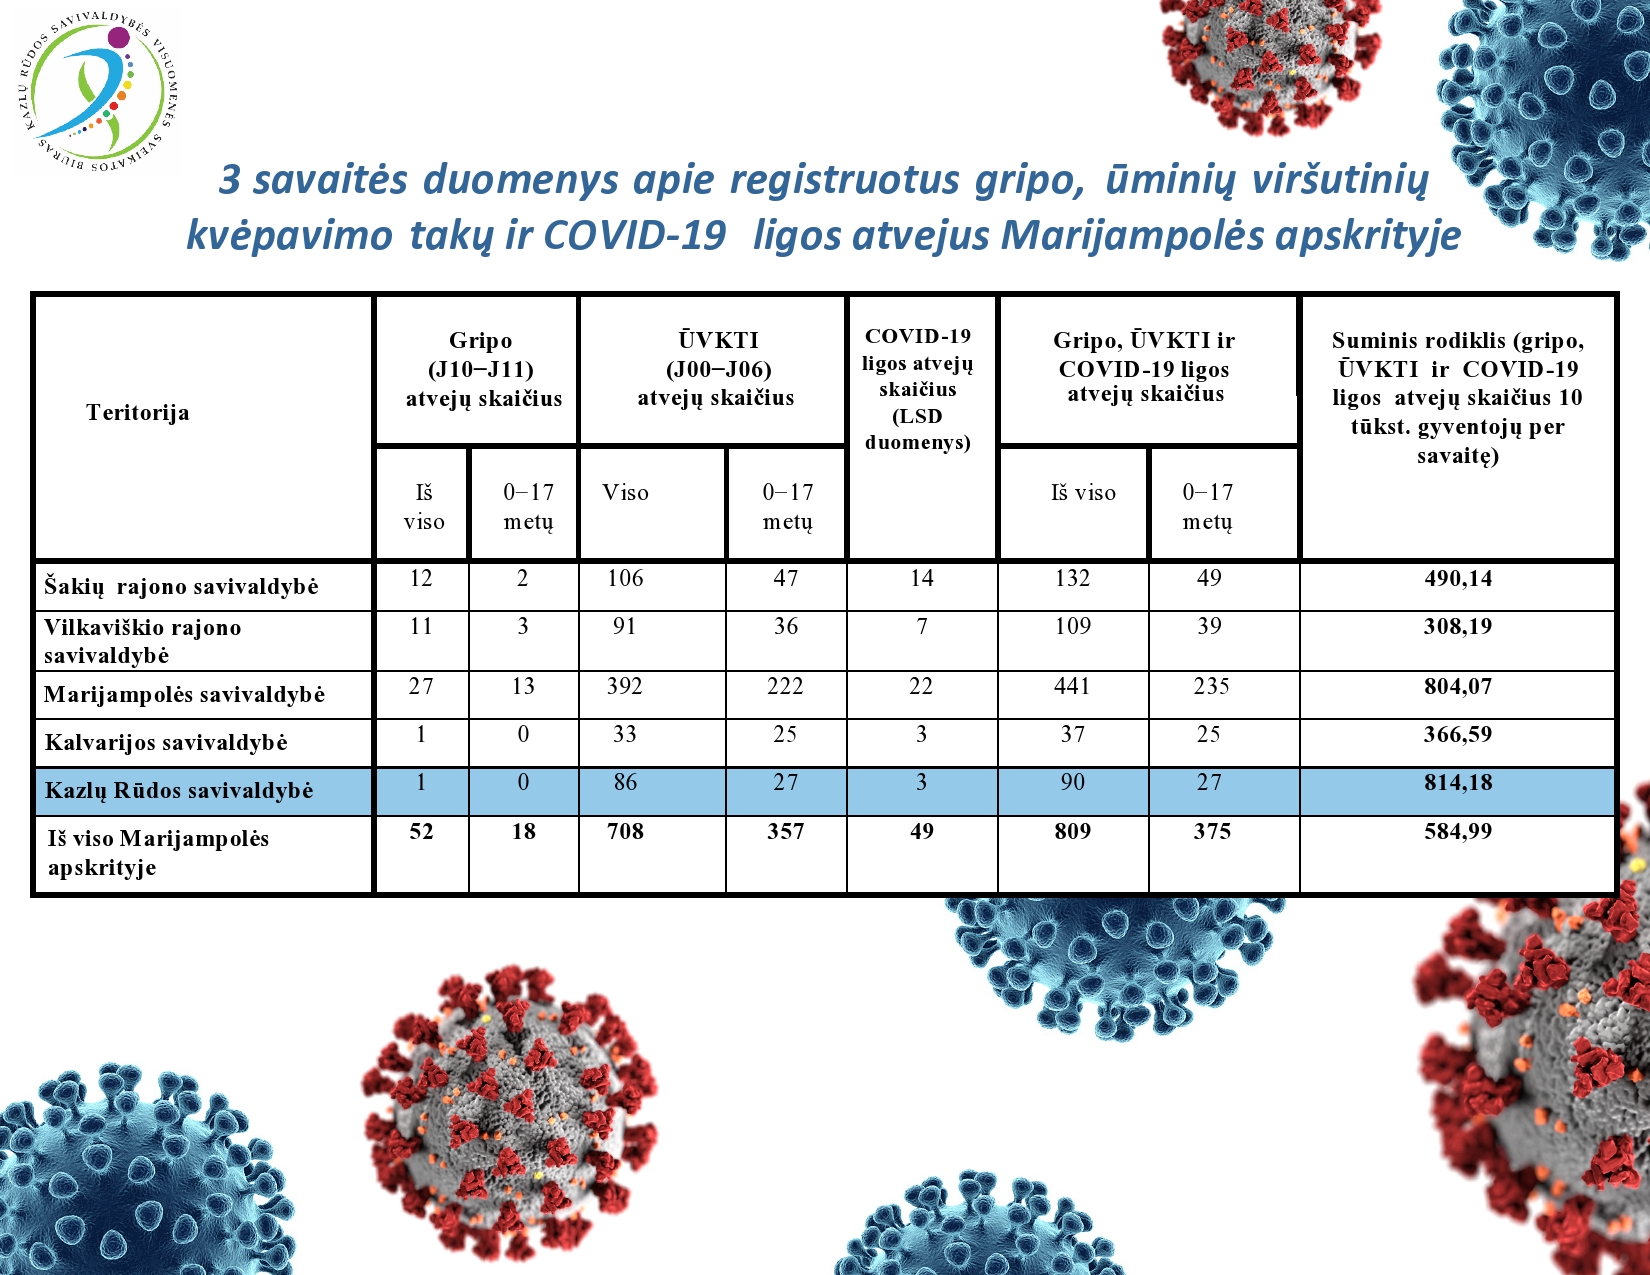 3-savaites-duomenys-apie-registruotus-gripo,-uminiu-virsutiniu-kvepavimo-taku-ir-covid-19-ligos-atvejus-marijampoles-apskrityje-